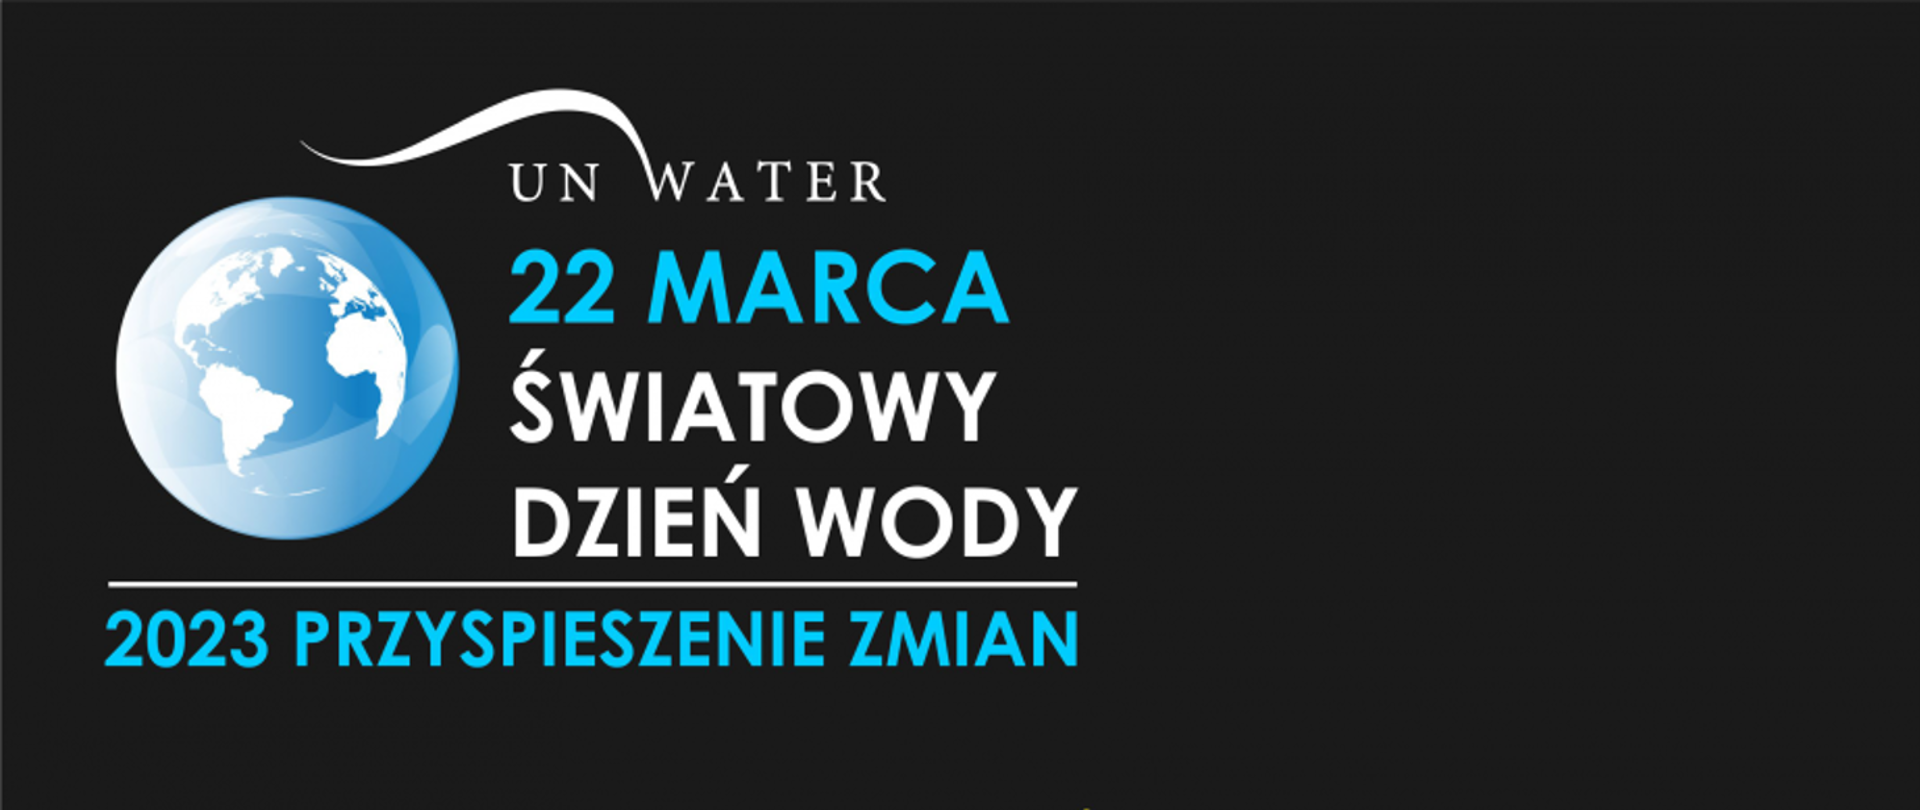 Światowy Dzień Wody 2023 „ Przyspieszenie zmian”